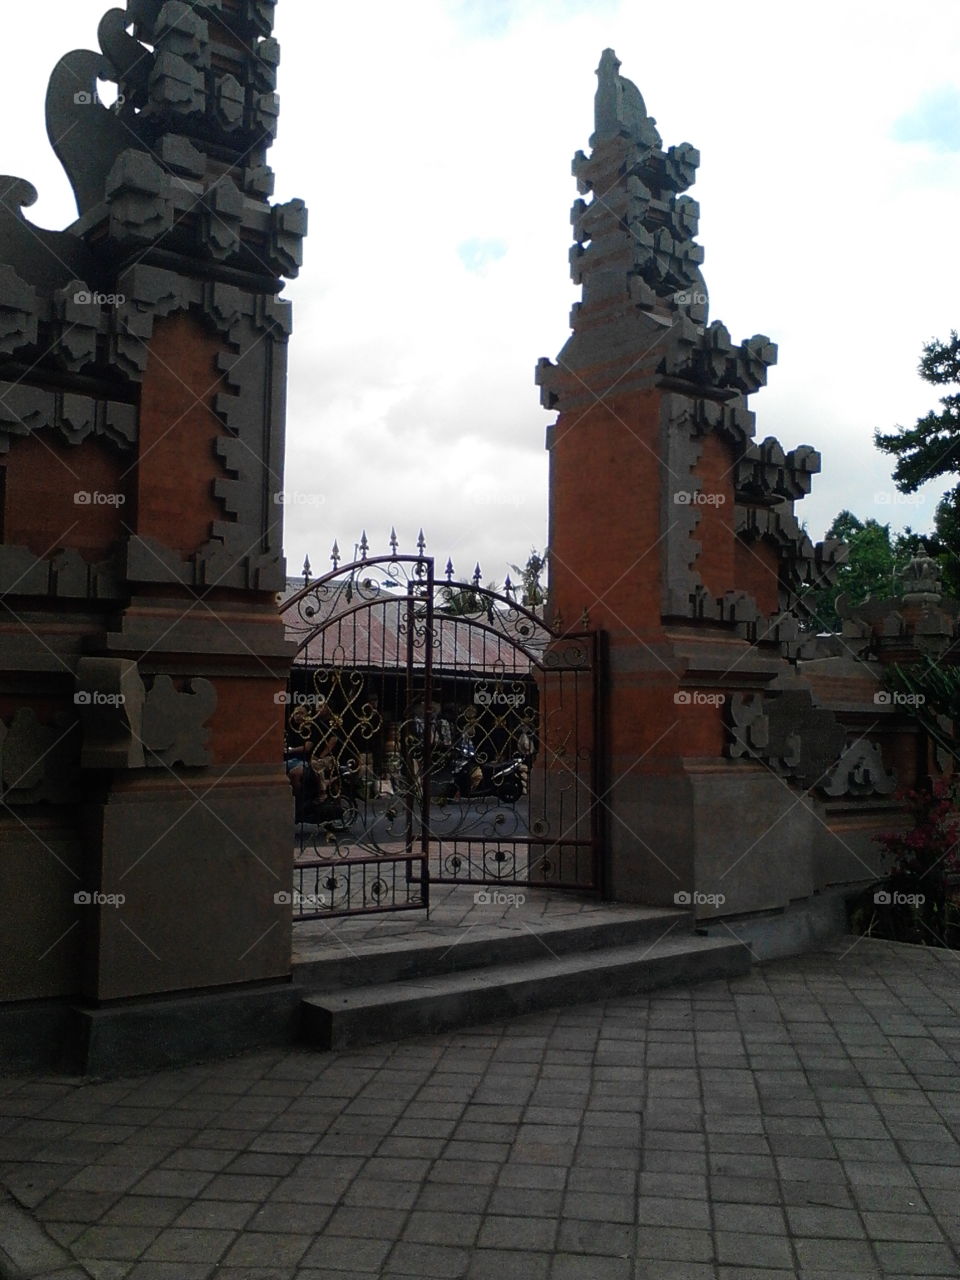 Open Gate in Bali